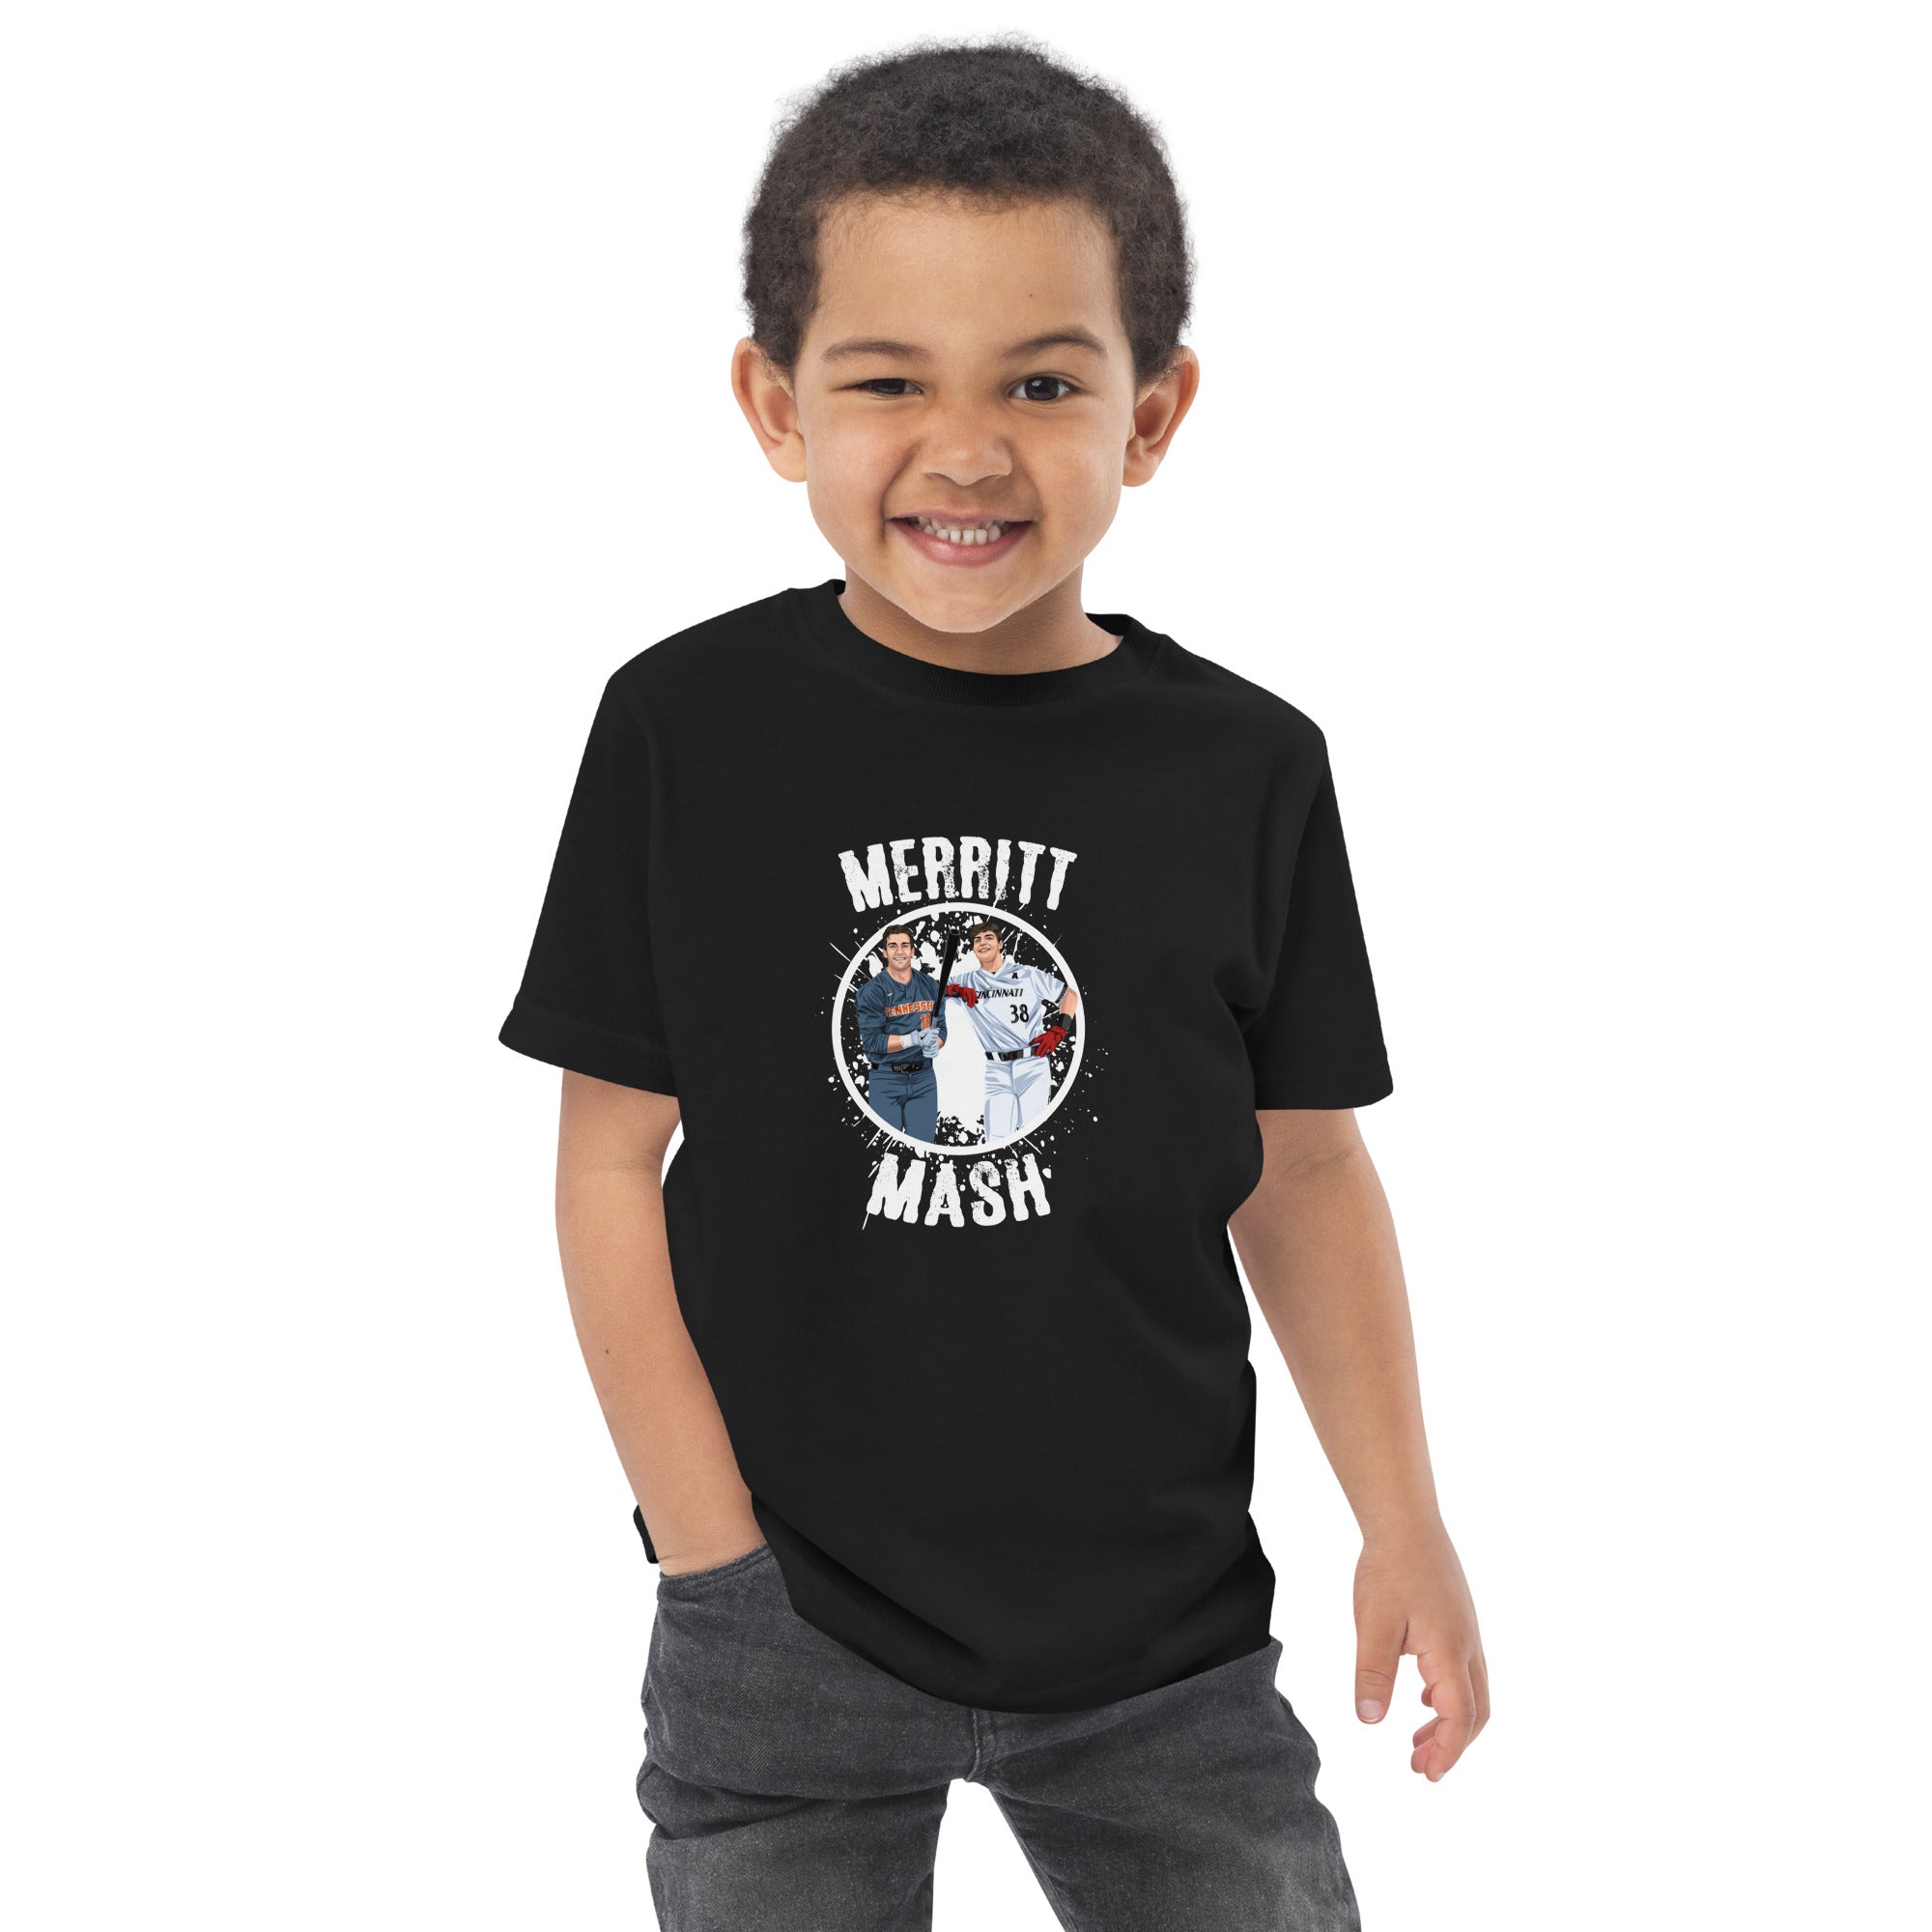 Merritt Mash Toddler jersey t-shirt